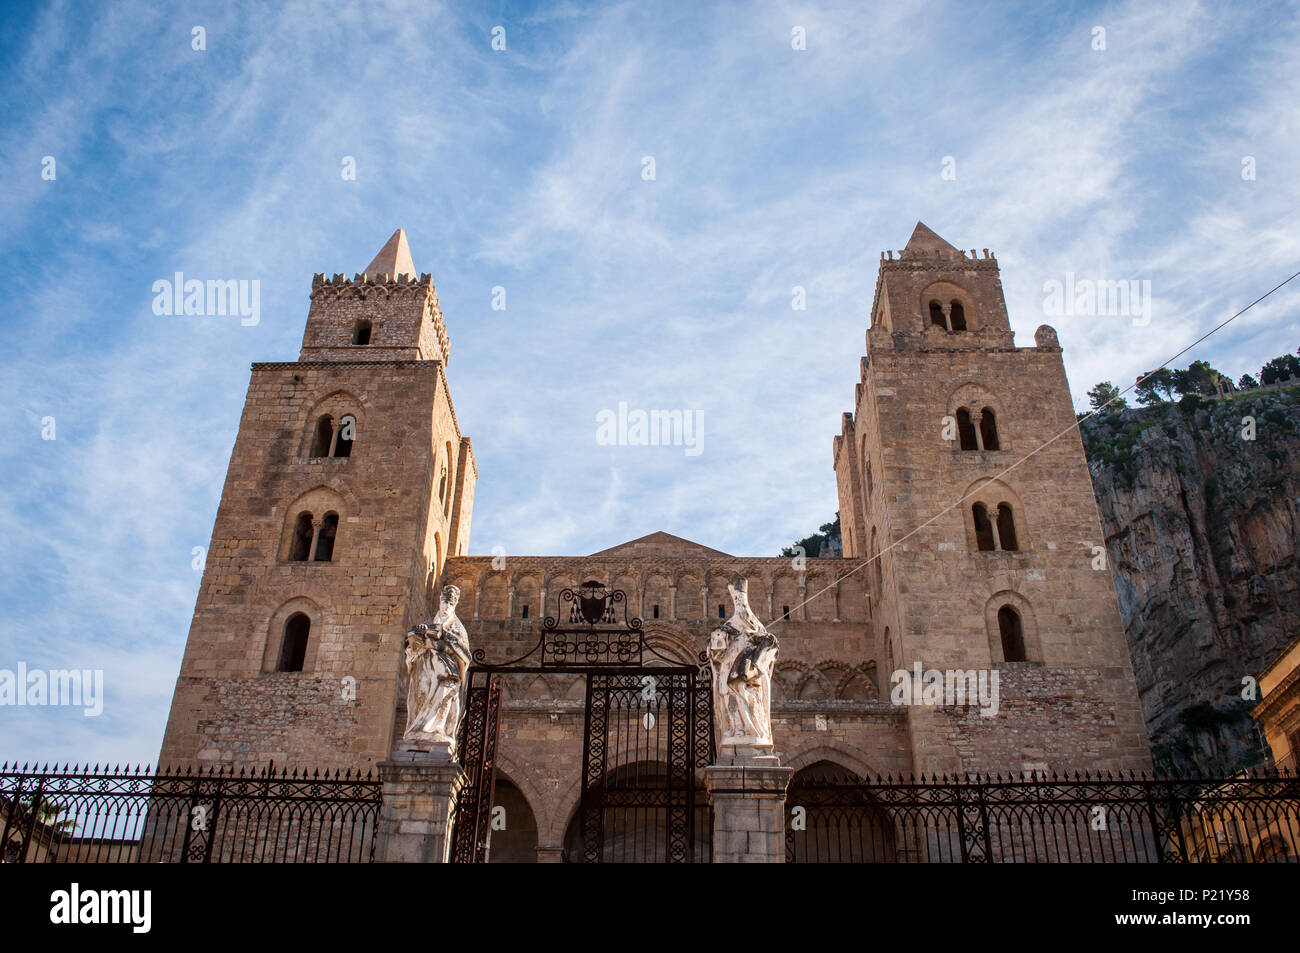 Ein Blick auf die Mittelalterliche Norman katholische Kathedrale von Cefalu. Arabische Türmen. Sizilien, Italien. Unesco Weltkulturerbe. Stockfoto